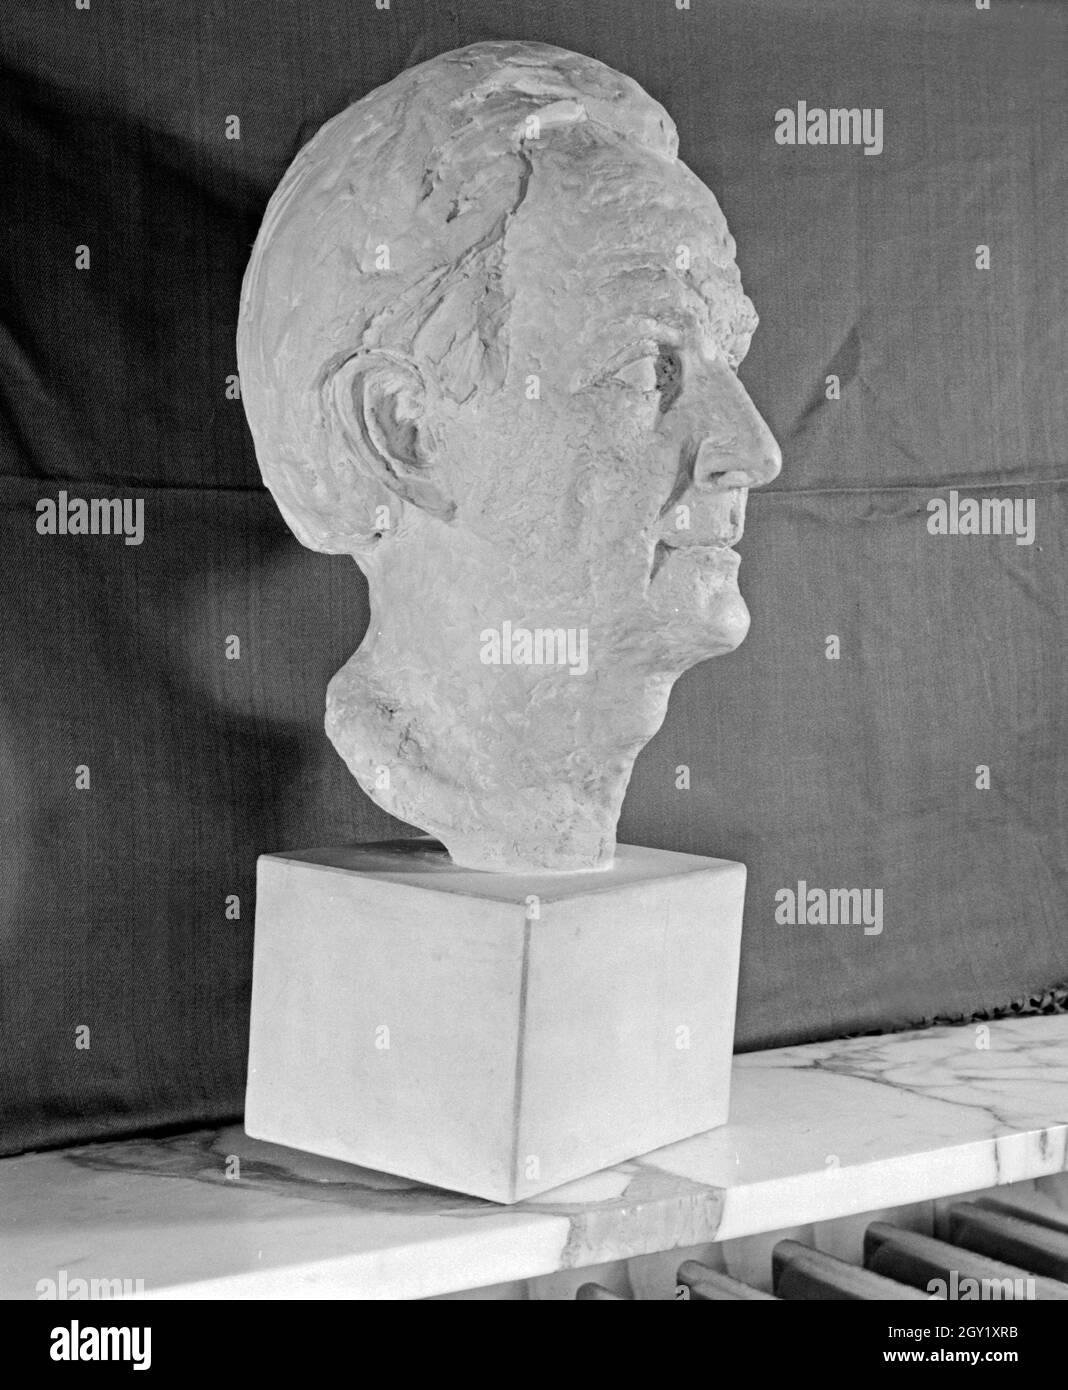 Reproduktion aus der Sammlung Erich Retzlaff: Porträtskulptur, Deutschland 1930er Jahre. Reproduktion von der Erich Retzlaff Sammlung: portrait Skulptur, Deutschland 1930. Stockfoto